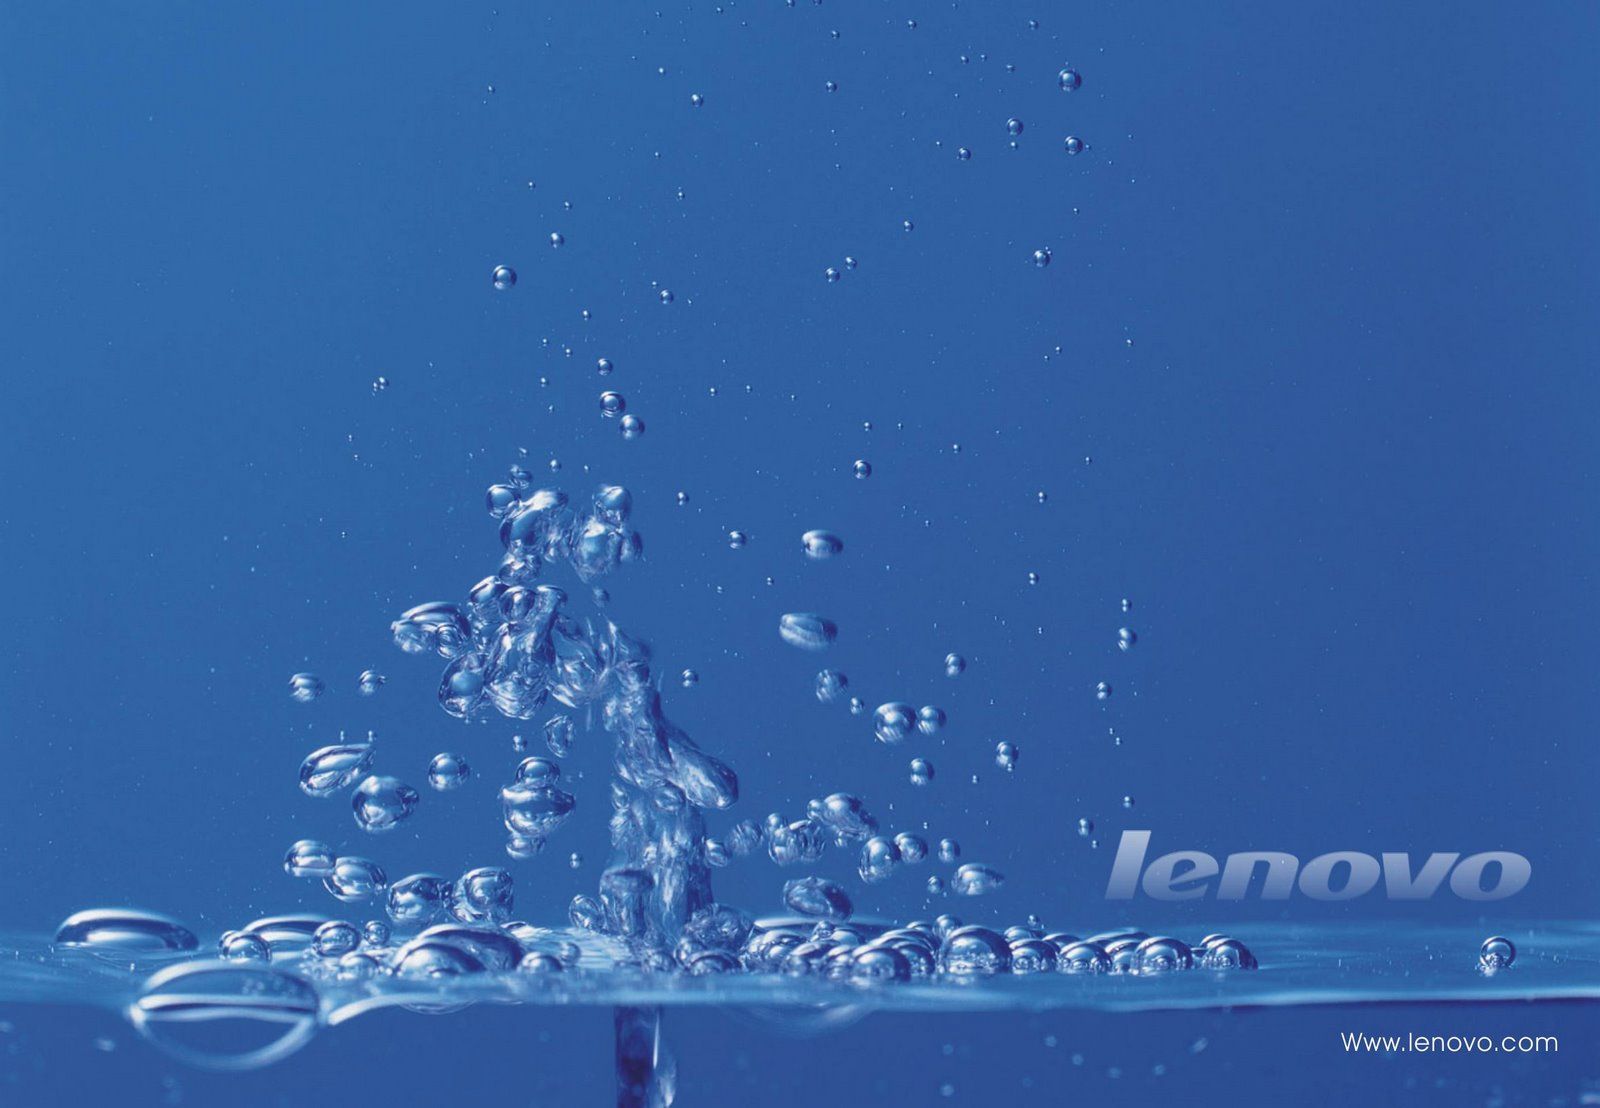 lenovo k6 power wallpaper,wasser,blau,himmel,atmosphäre,flüssigkeit